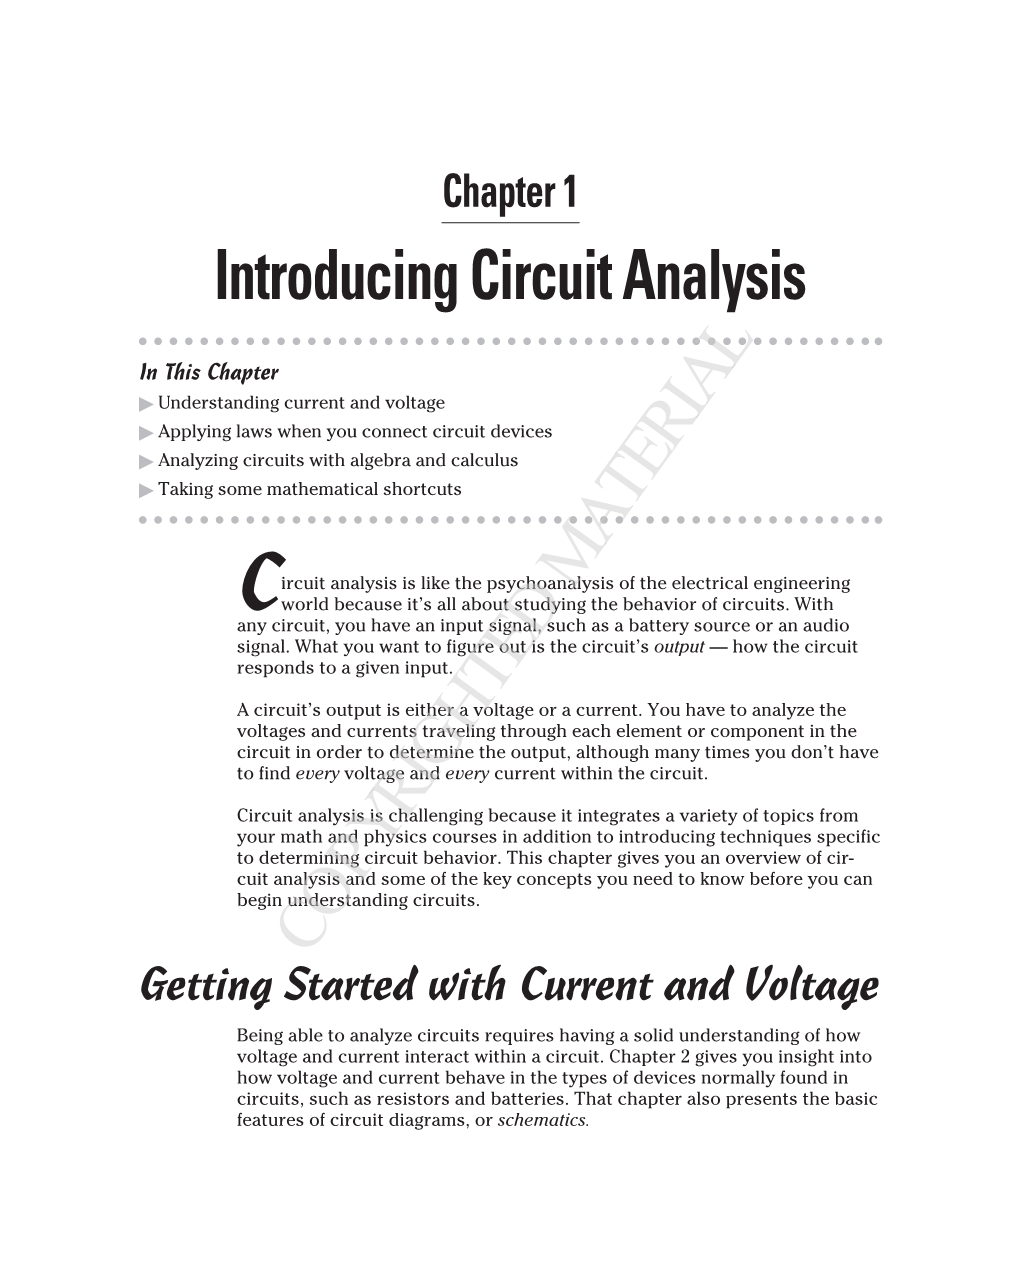 Introducing Circuit Analysis